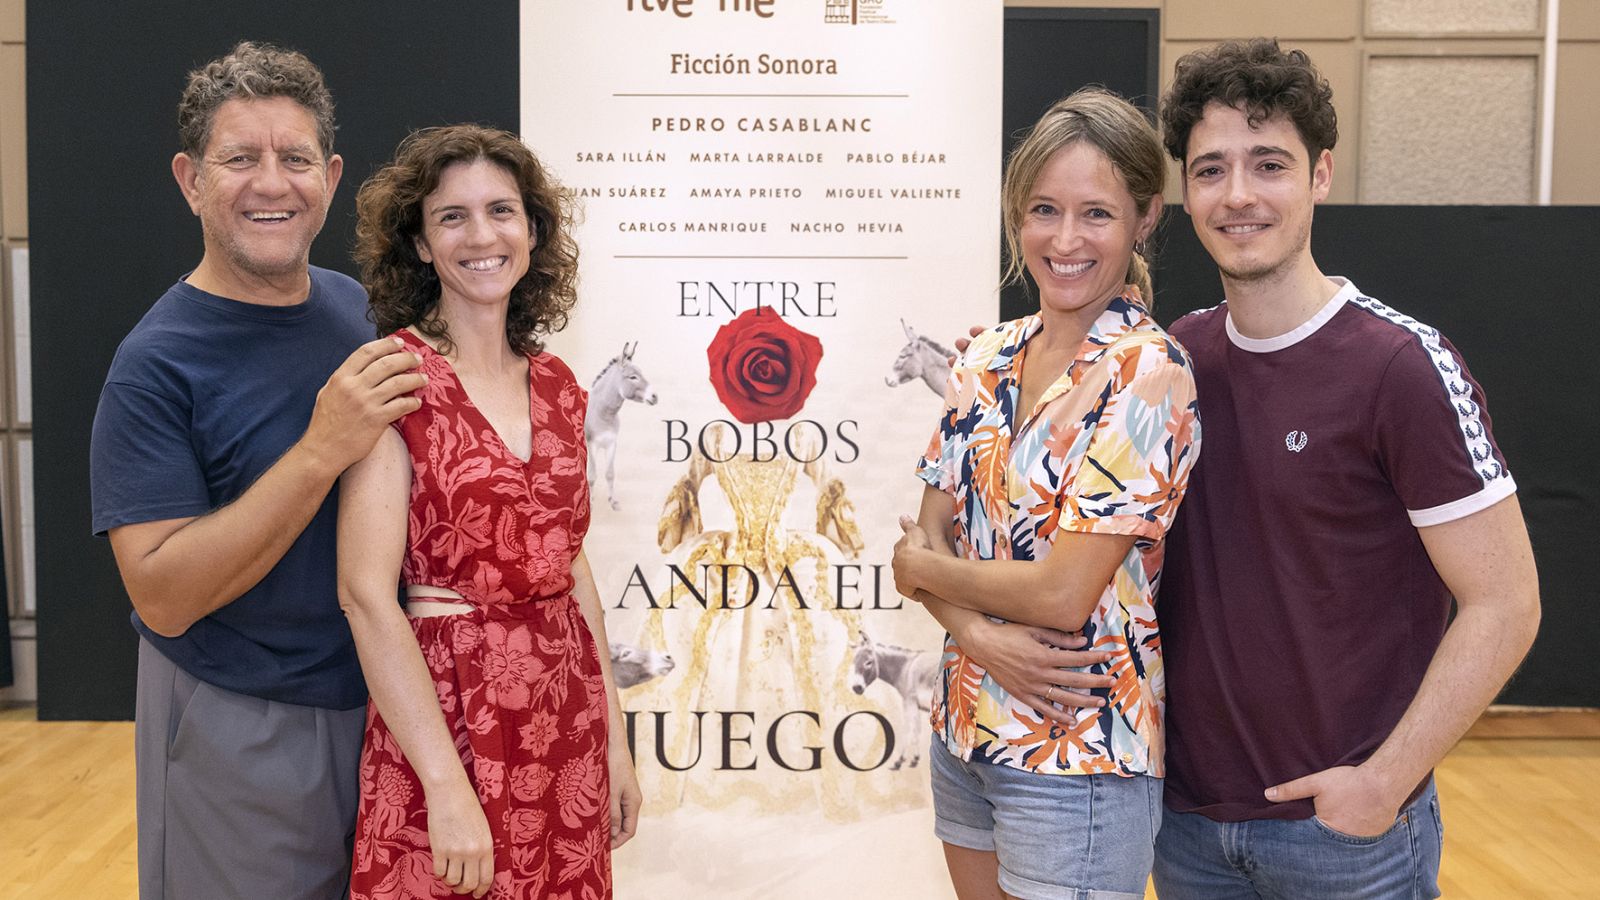 RNE estrena en el Festival de Almagro la ficcin sonora 'Entre bobos anda el juego'